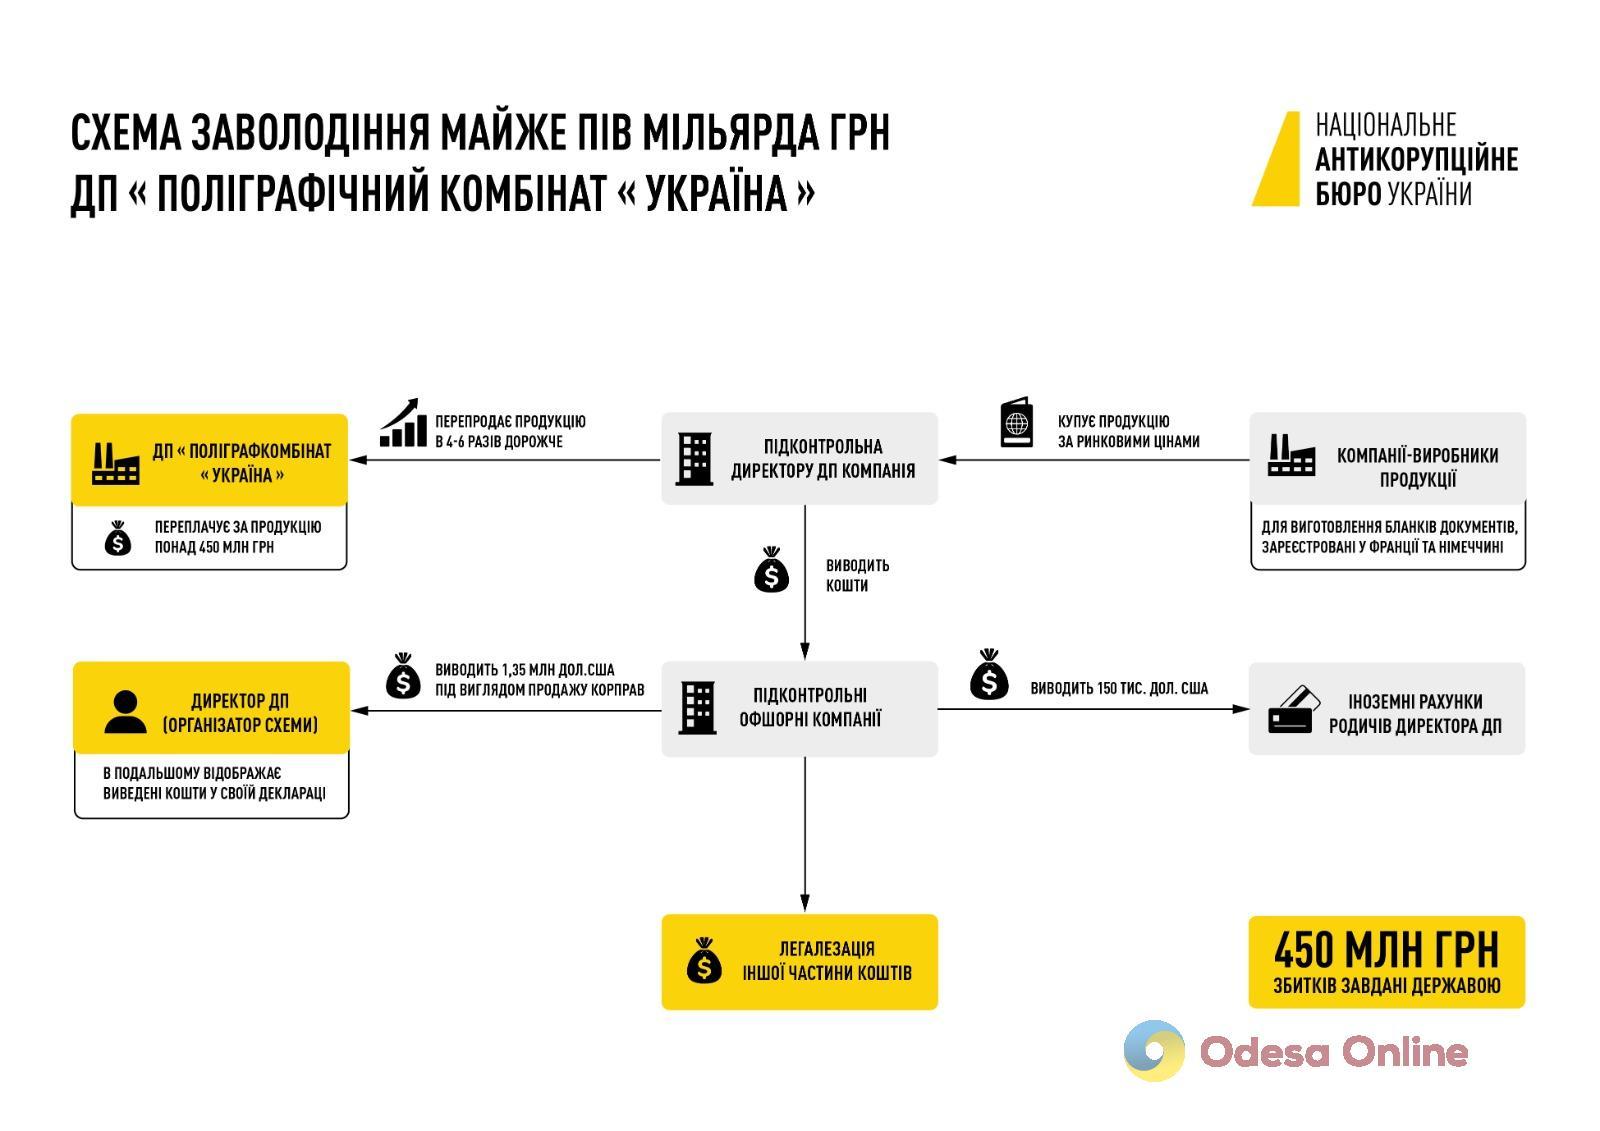 НАБУ разоблачило международную коррупционную схему, связанную с ГП «Полиграфический комбинат «Украина»